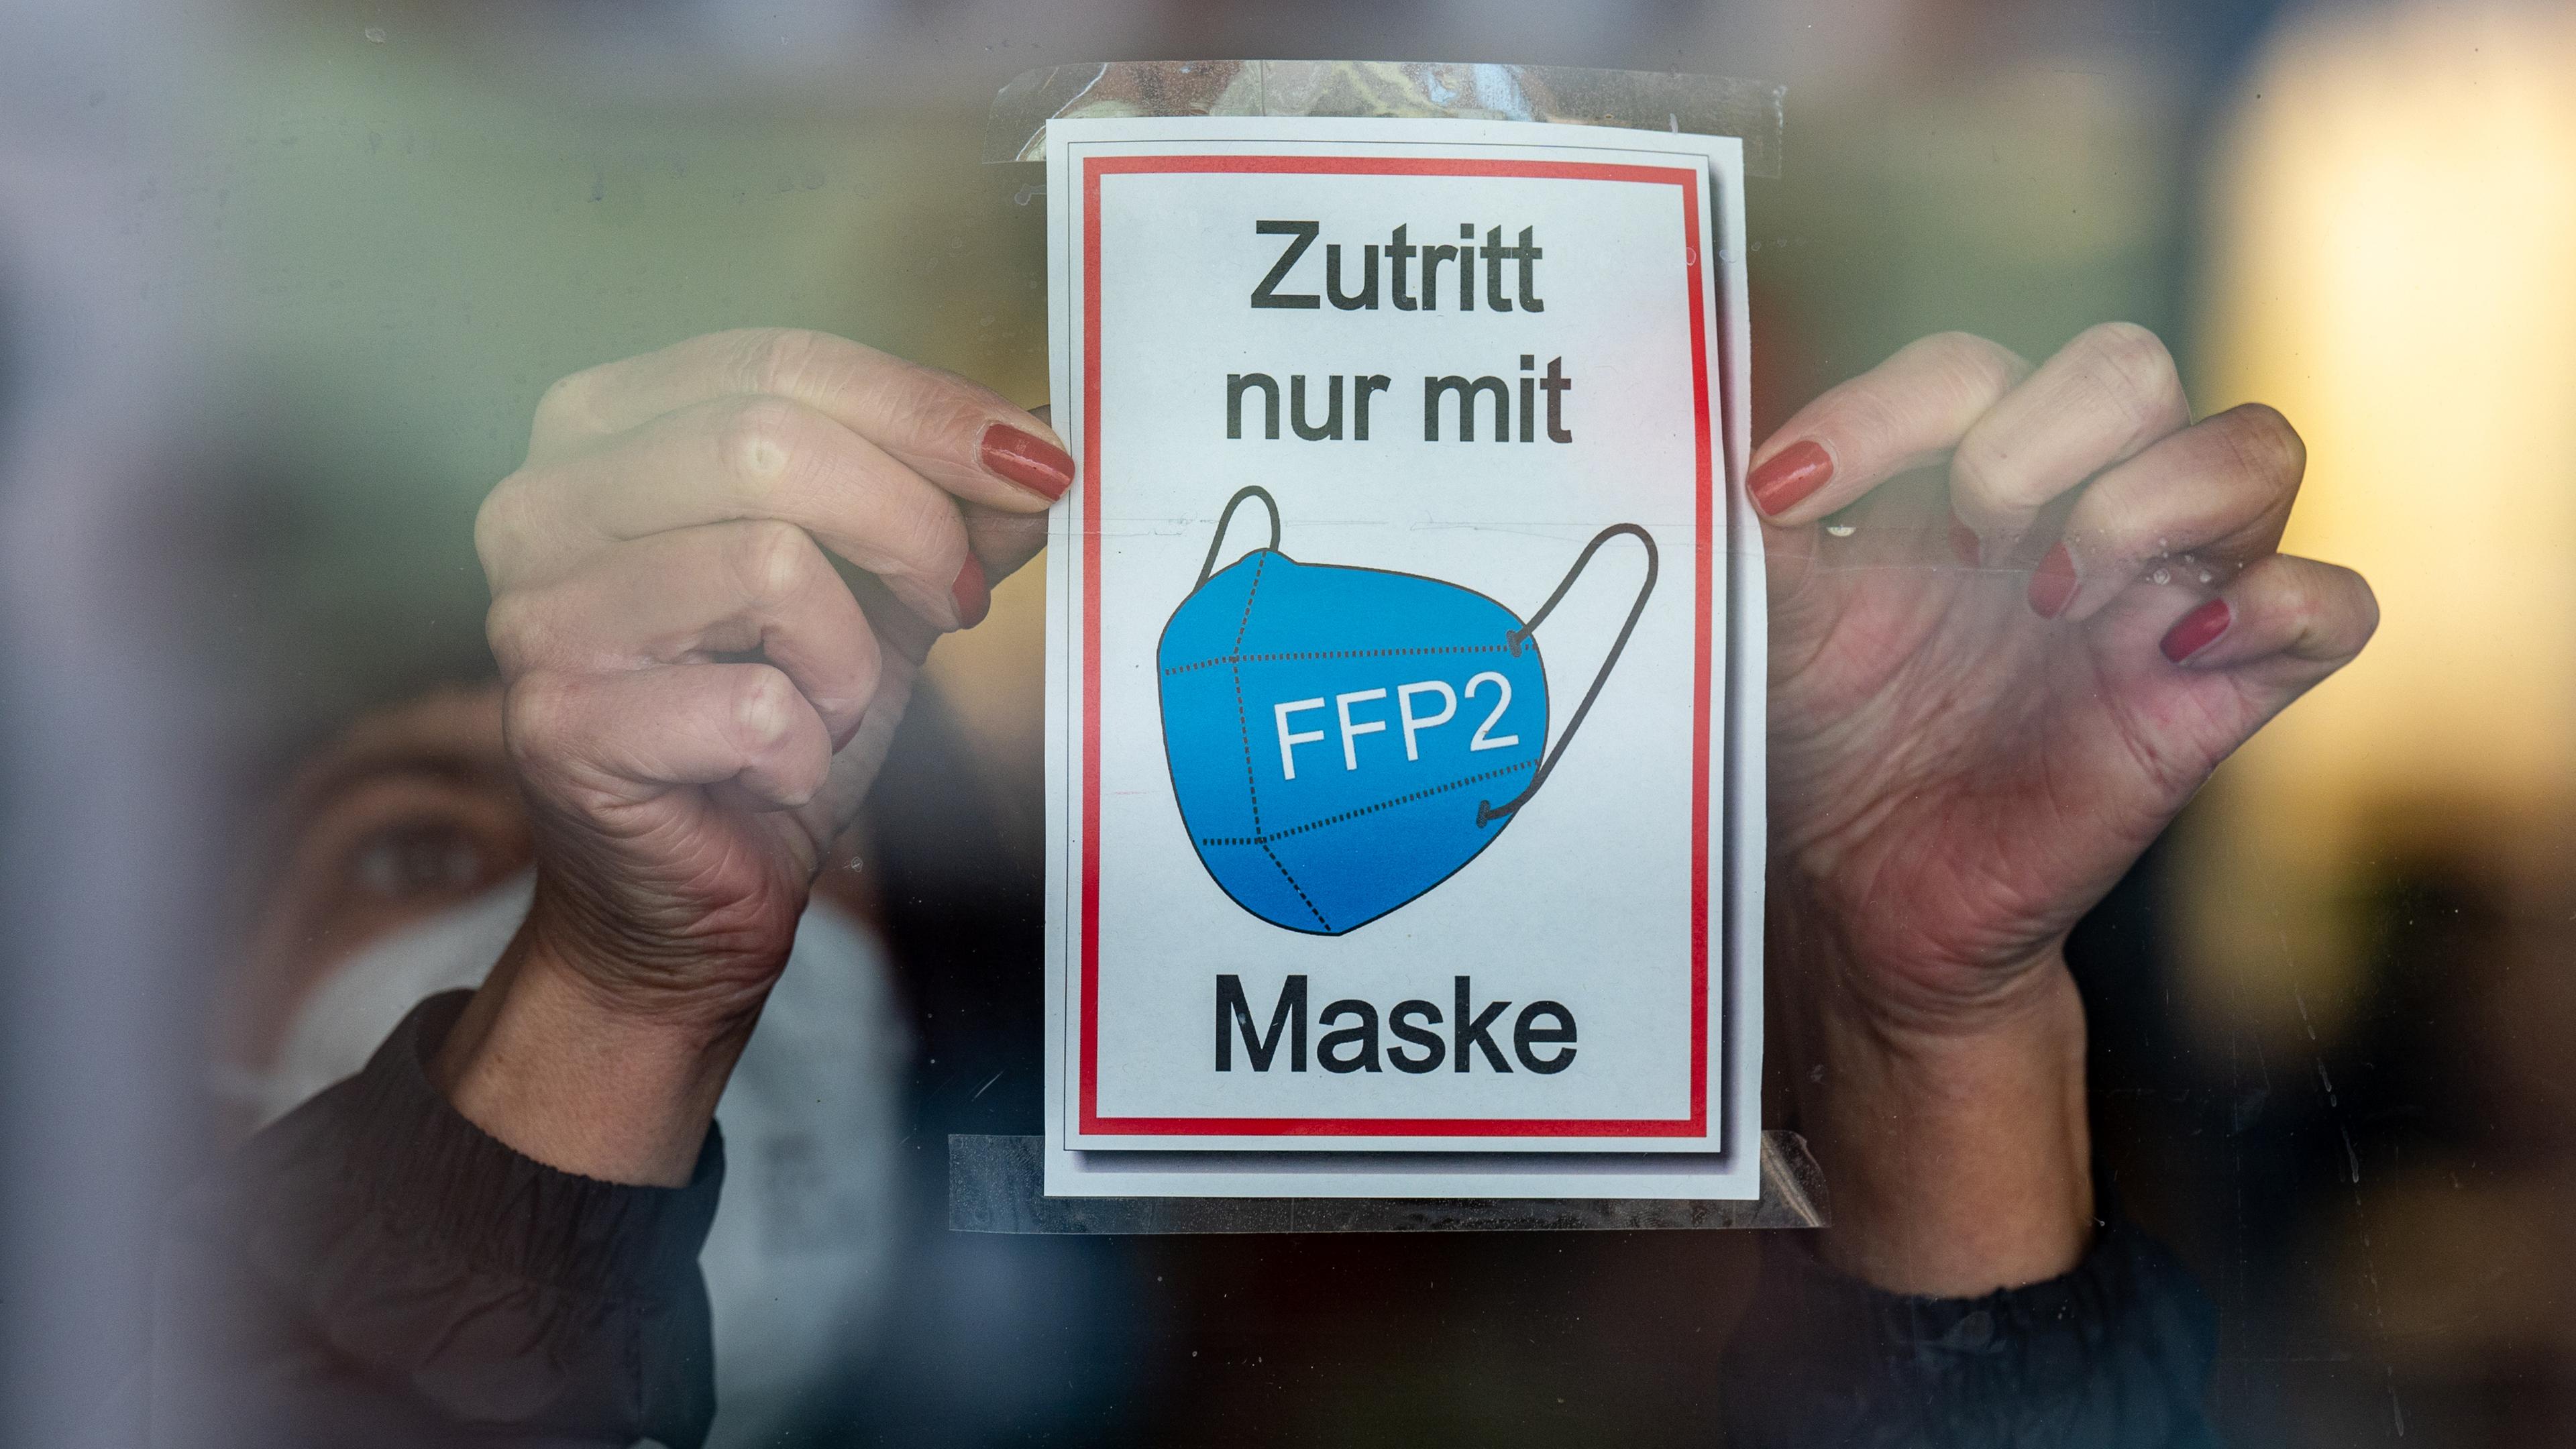  Bayern, Straubing: Eine Frau klebt ein Hinweisschild mit der Aufschrift ·Zutritt nur mit FFP2 Maske· an eine Glastür am Eingang eines Geschäfts in der Innenstadt.